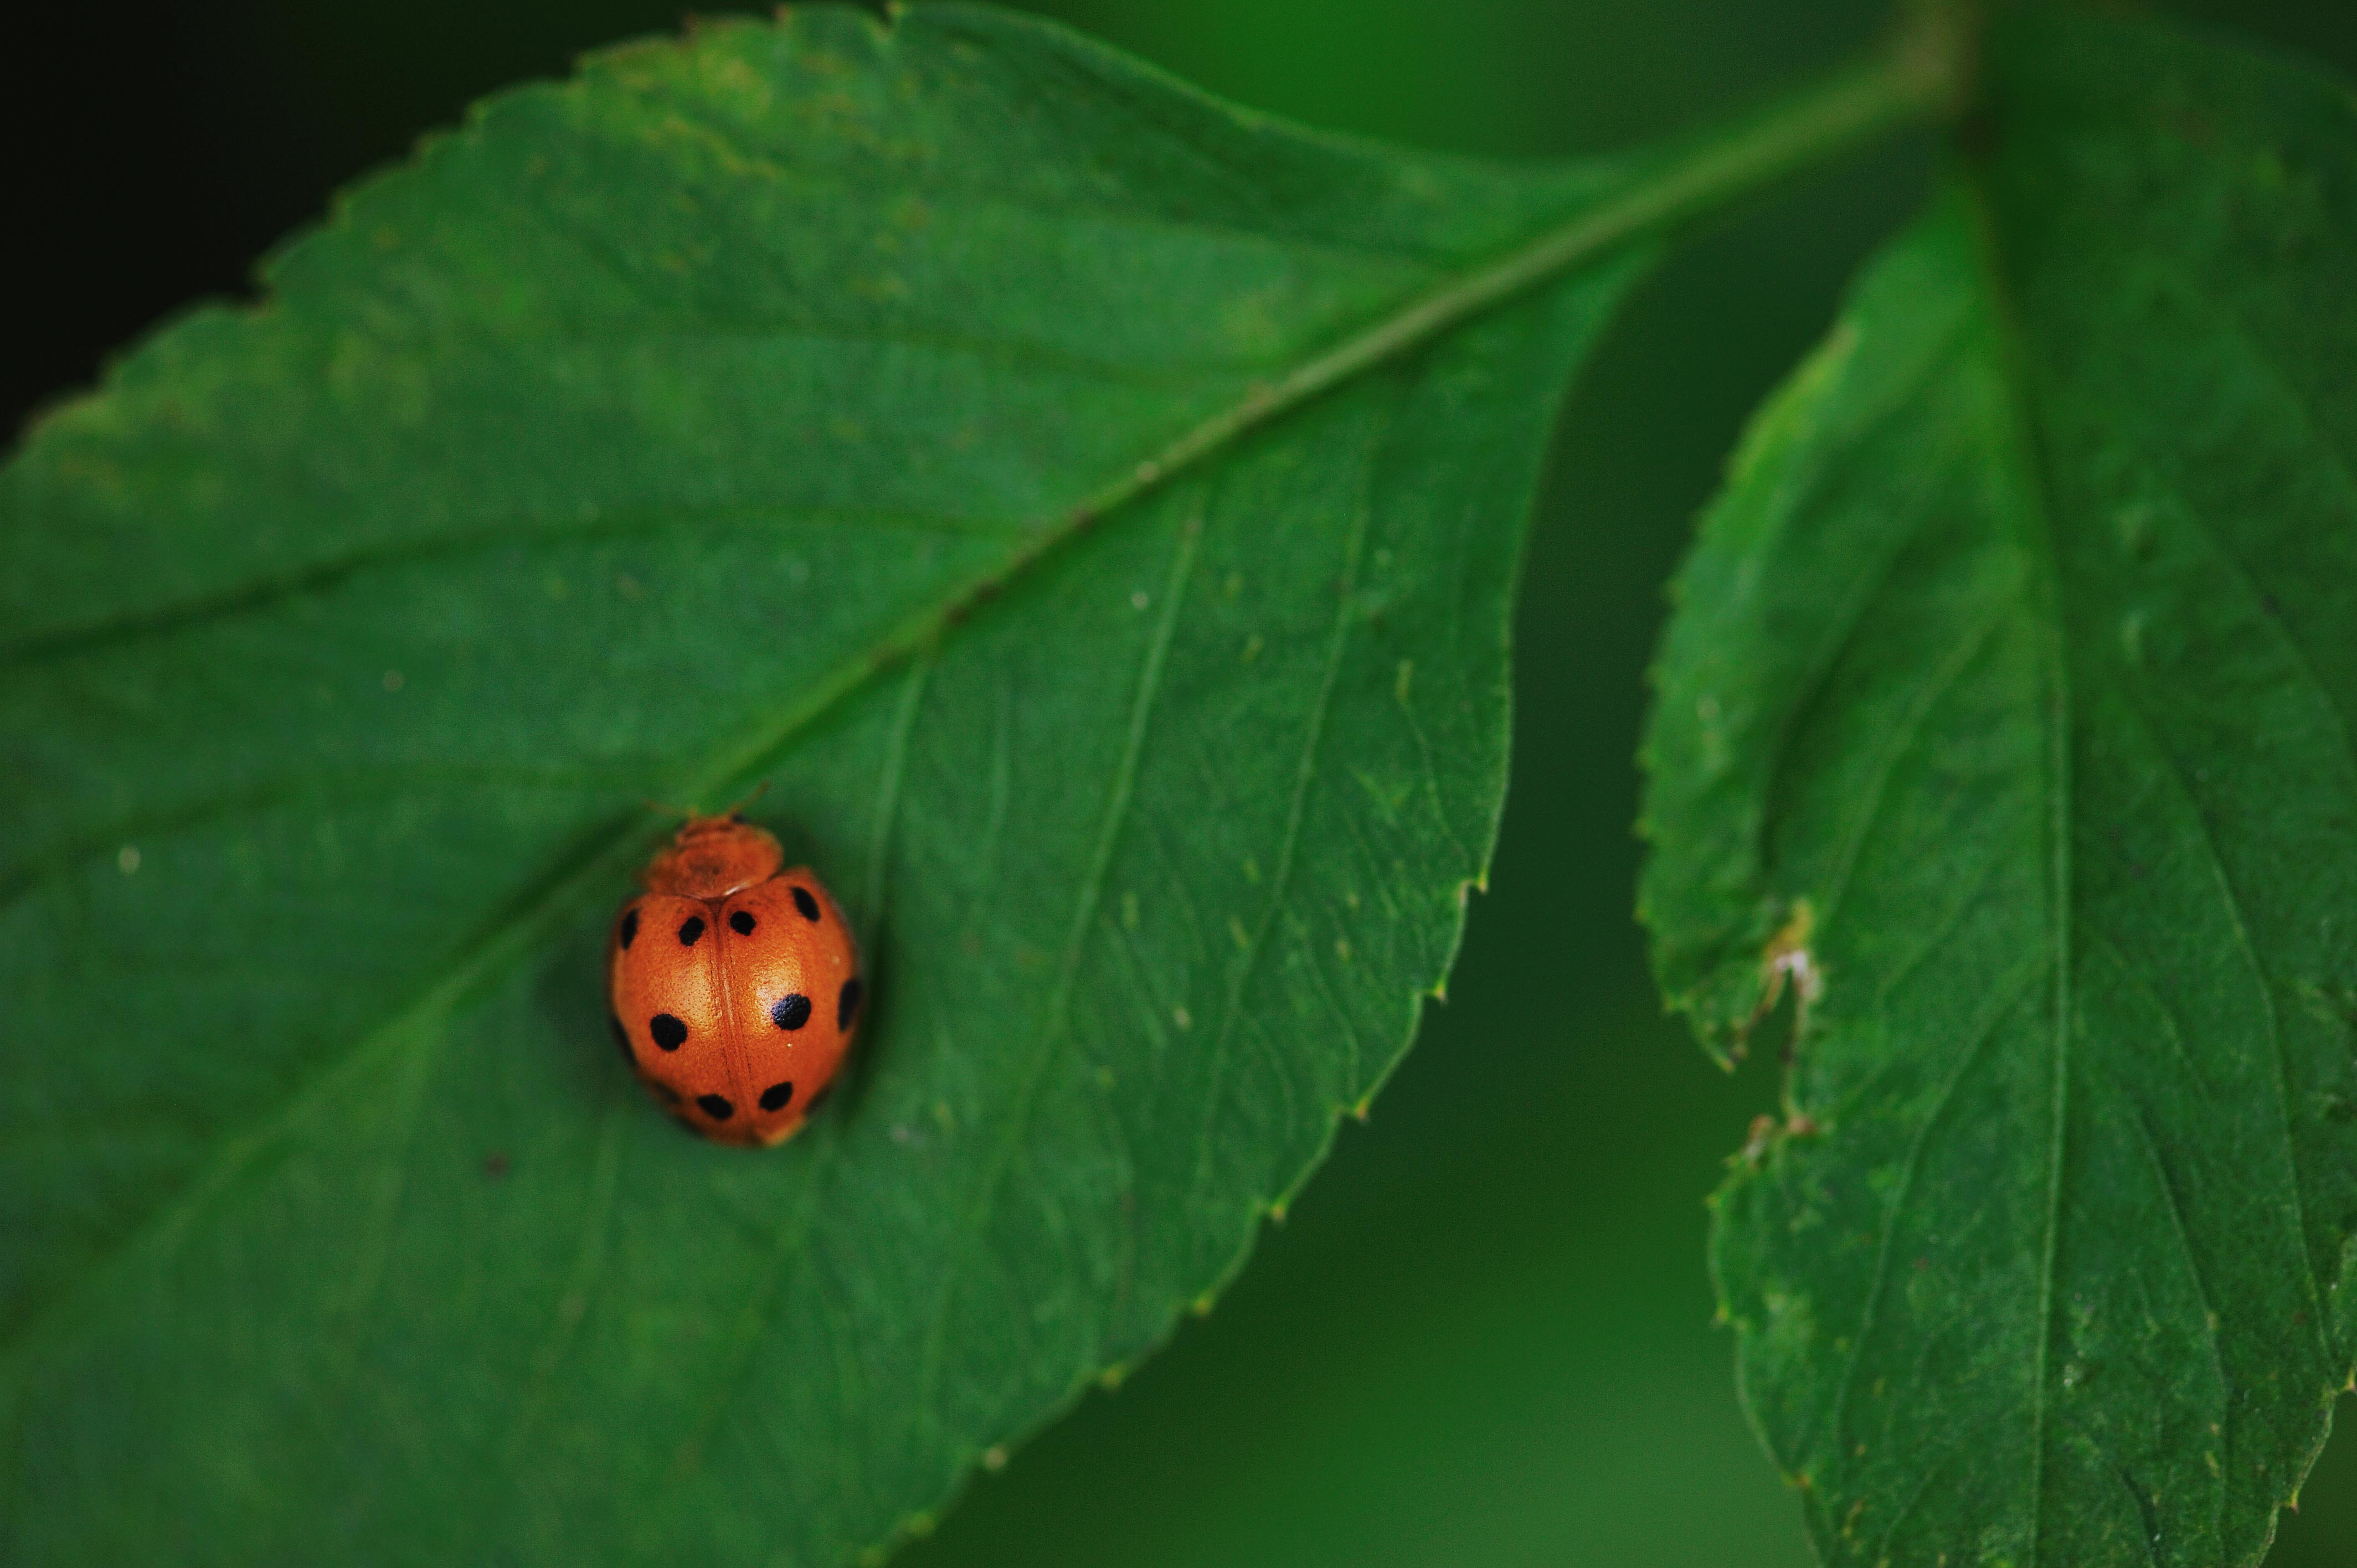 ジュウニマダラテントウ | 虫の写真と生態なら昆虫写真図鑑「ムシミル」